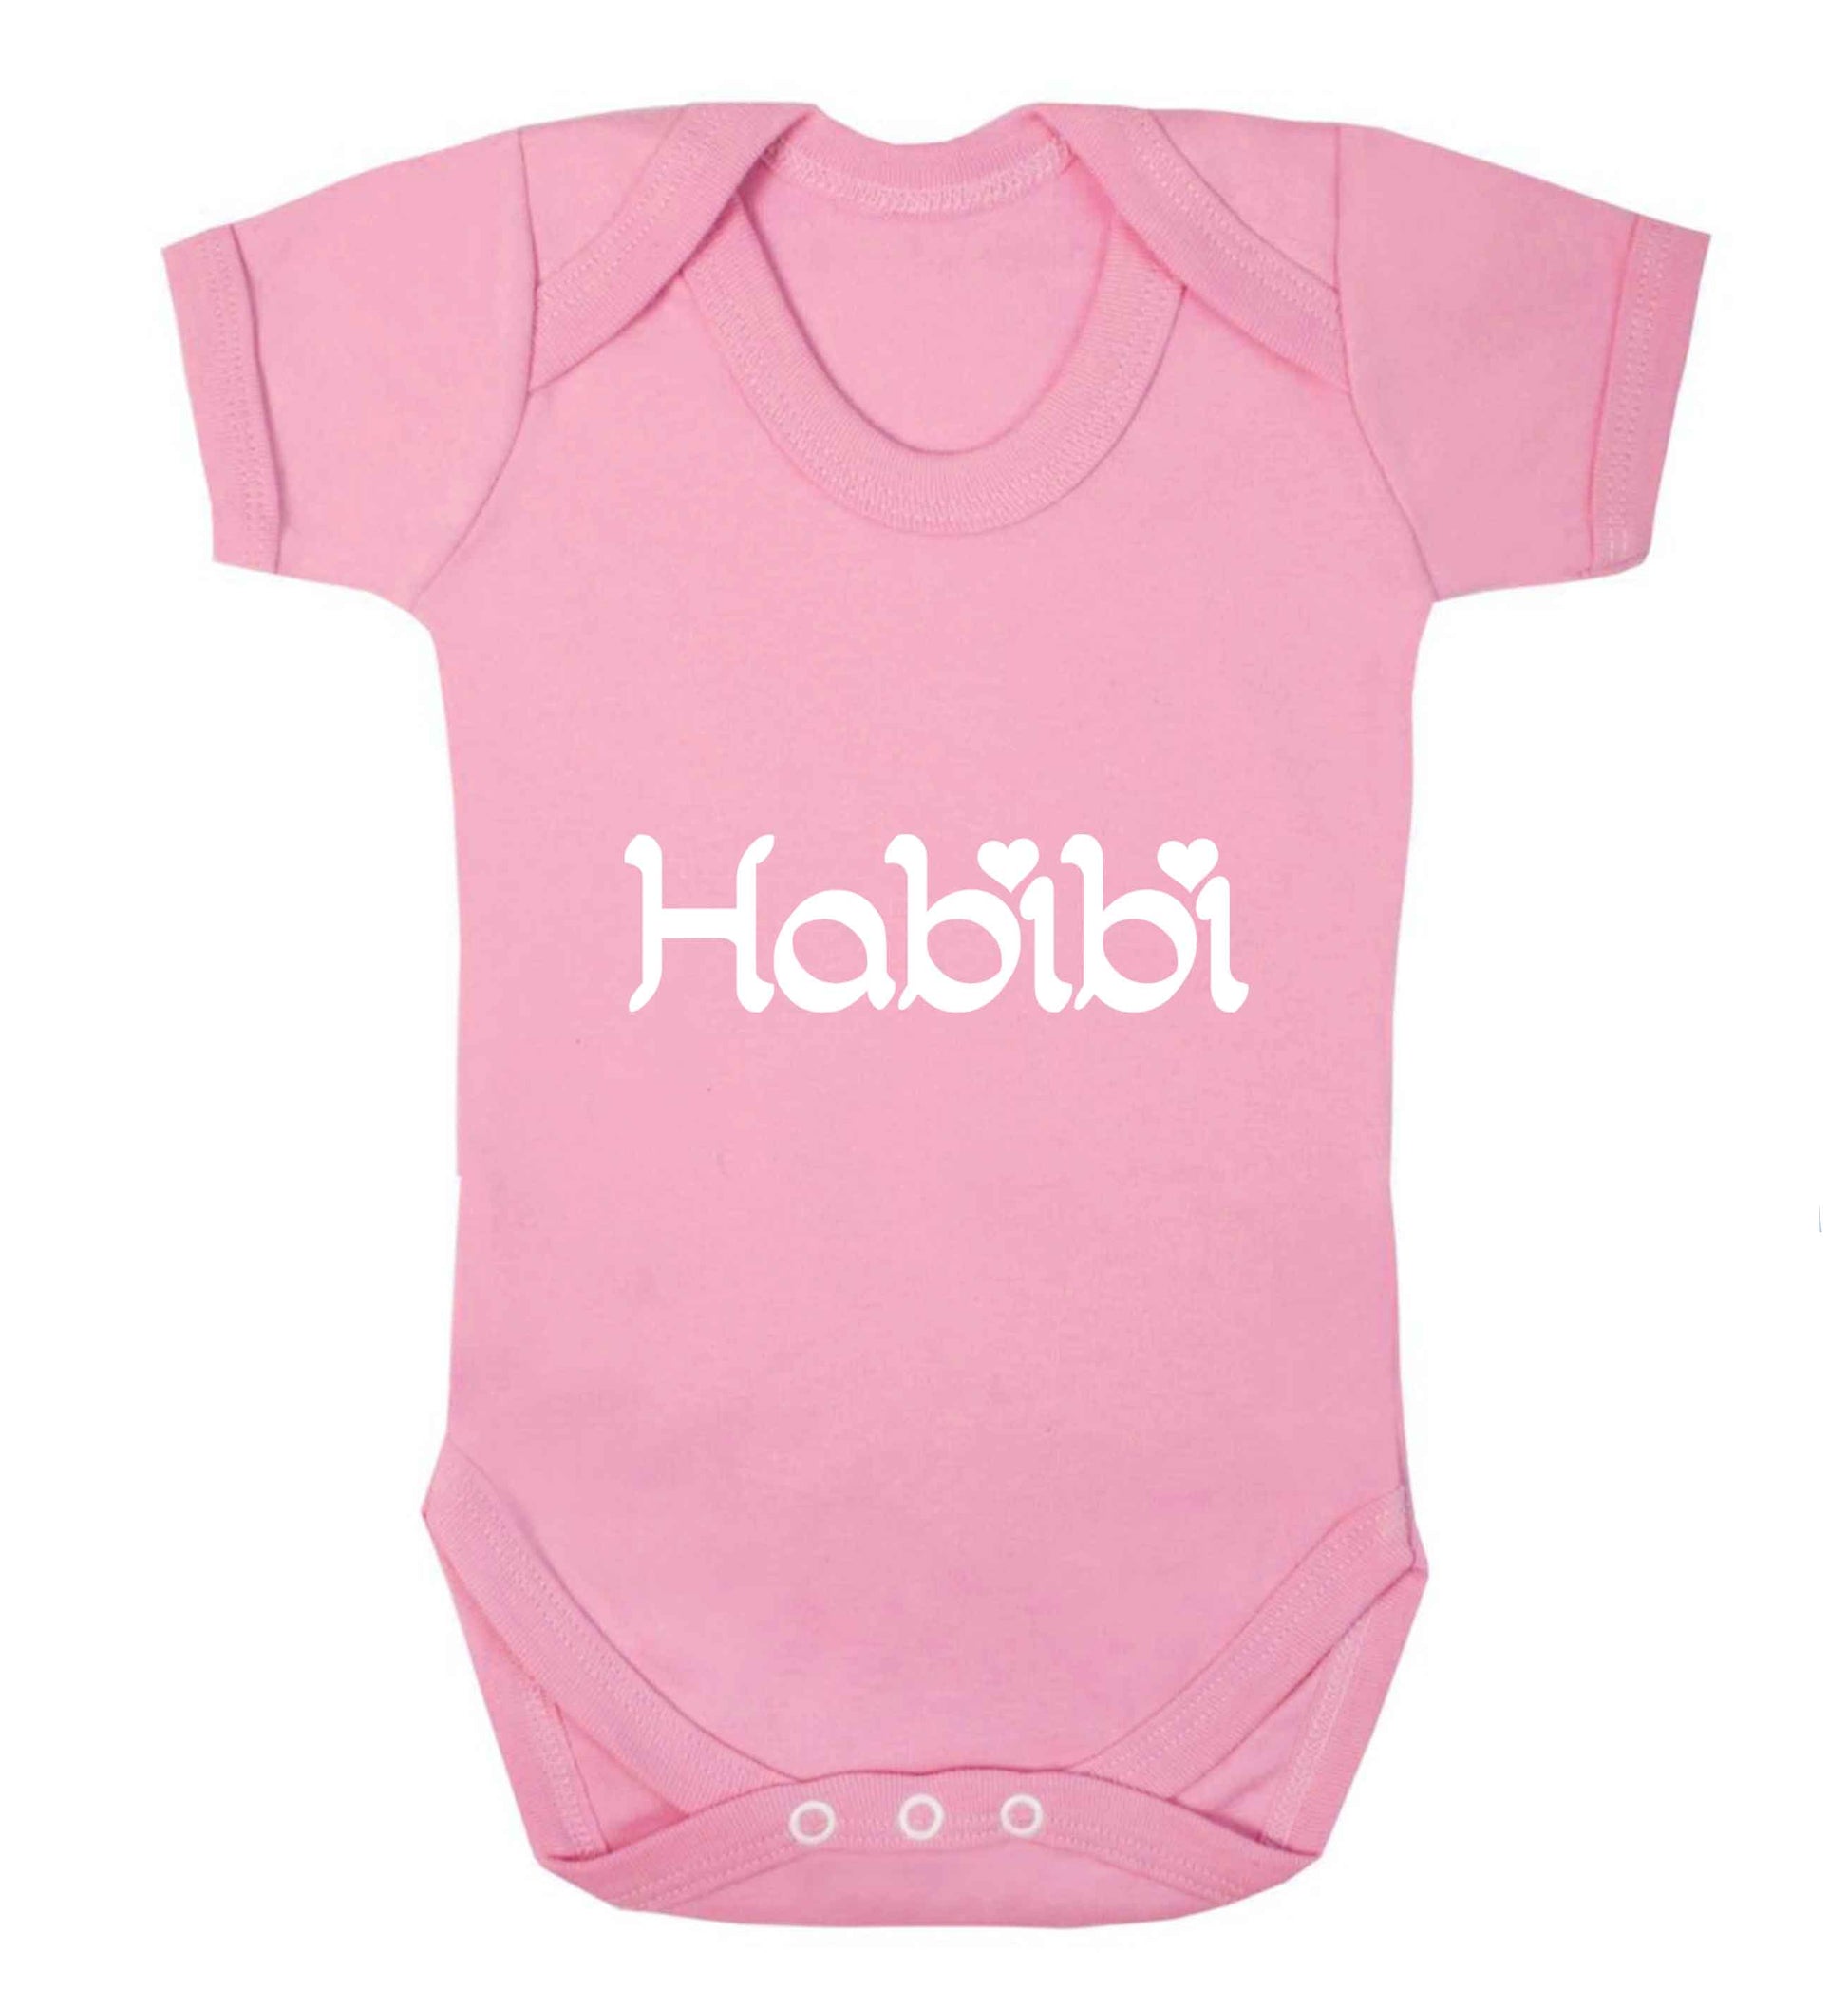 Habibi baby vest pale pink 18-24 months